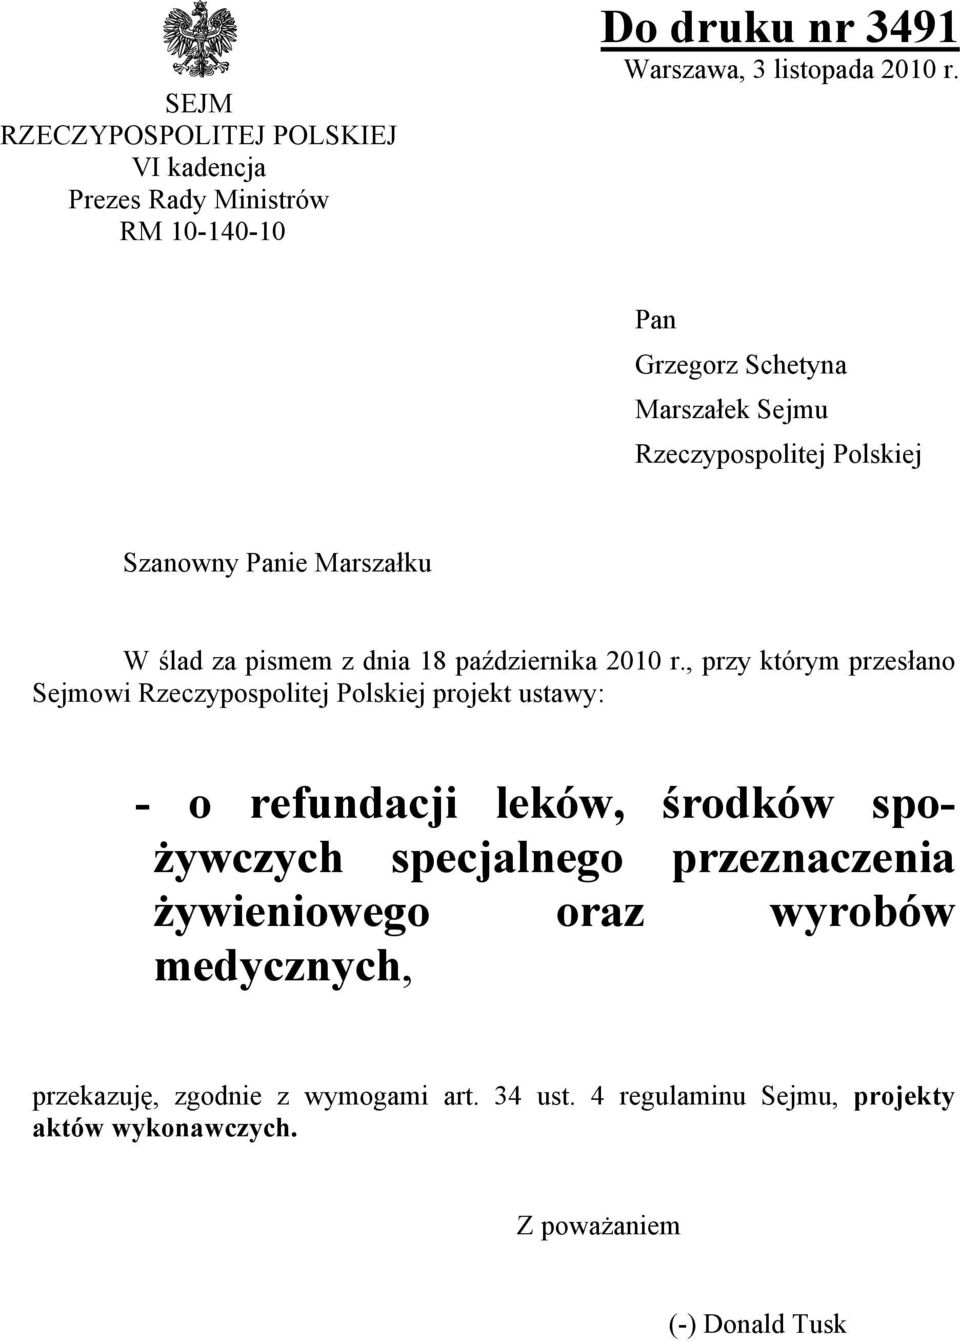 , przy którym przesłano Sejmowi Rzeczypospolitej Polskiej projekt ustawy: - o refundacji leków, środków spożywczych specjalnego